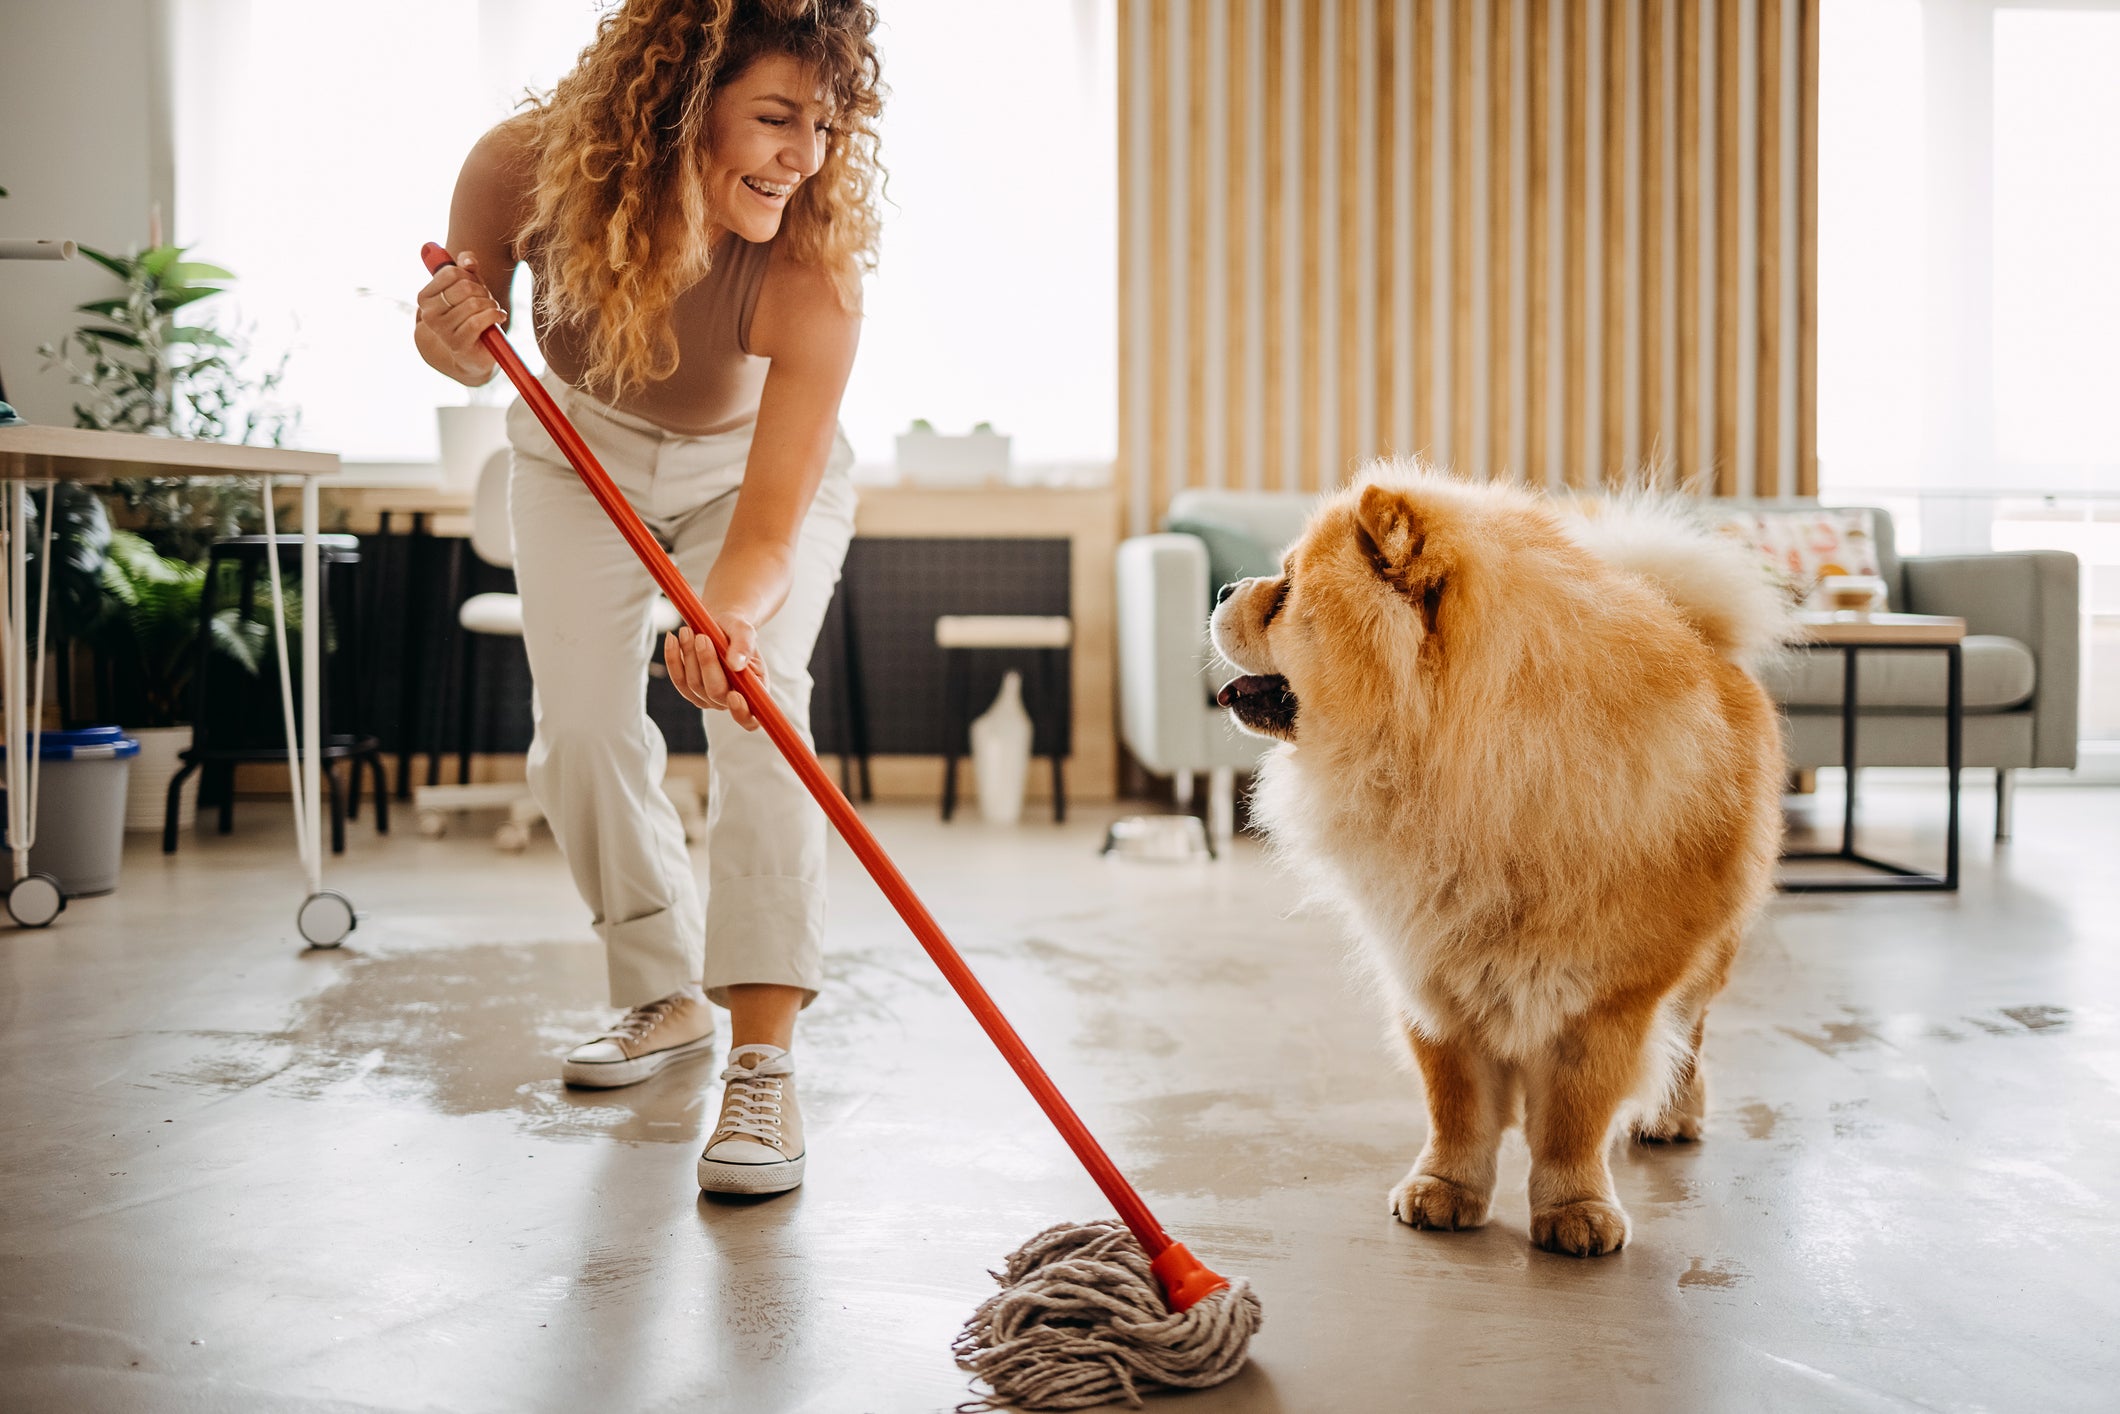 Tutora limpando chão de casa enquanto sorri para seu cão Chow Chow